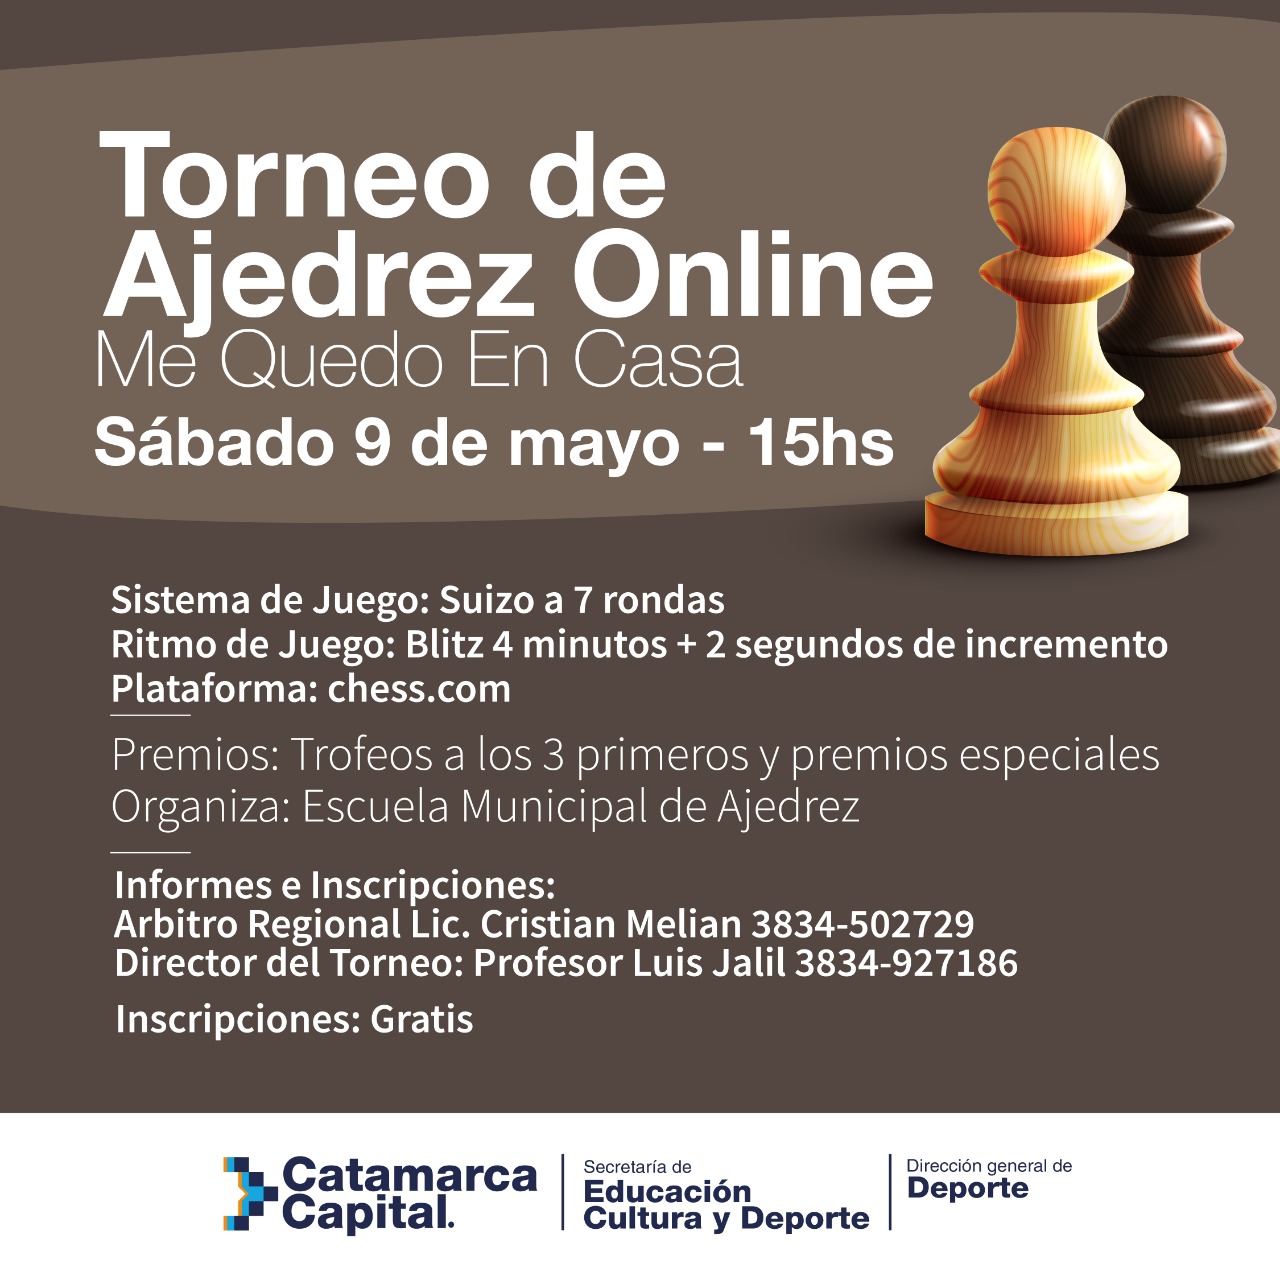 Torneo de ajedrez online “Me quedo en casa” - Municipalidad de SFVC